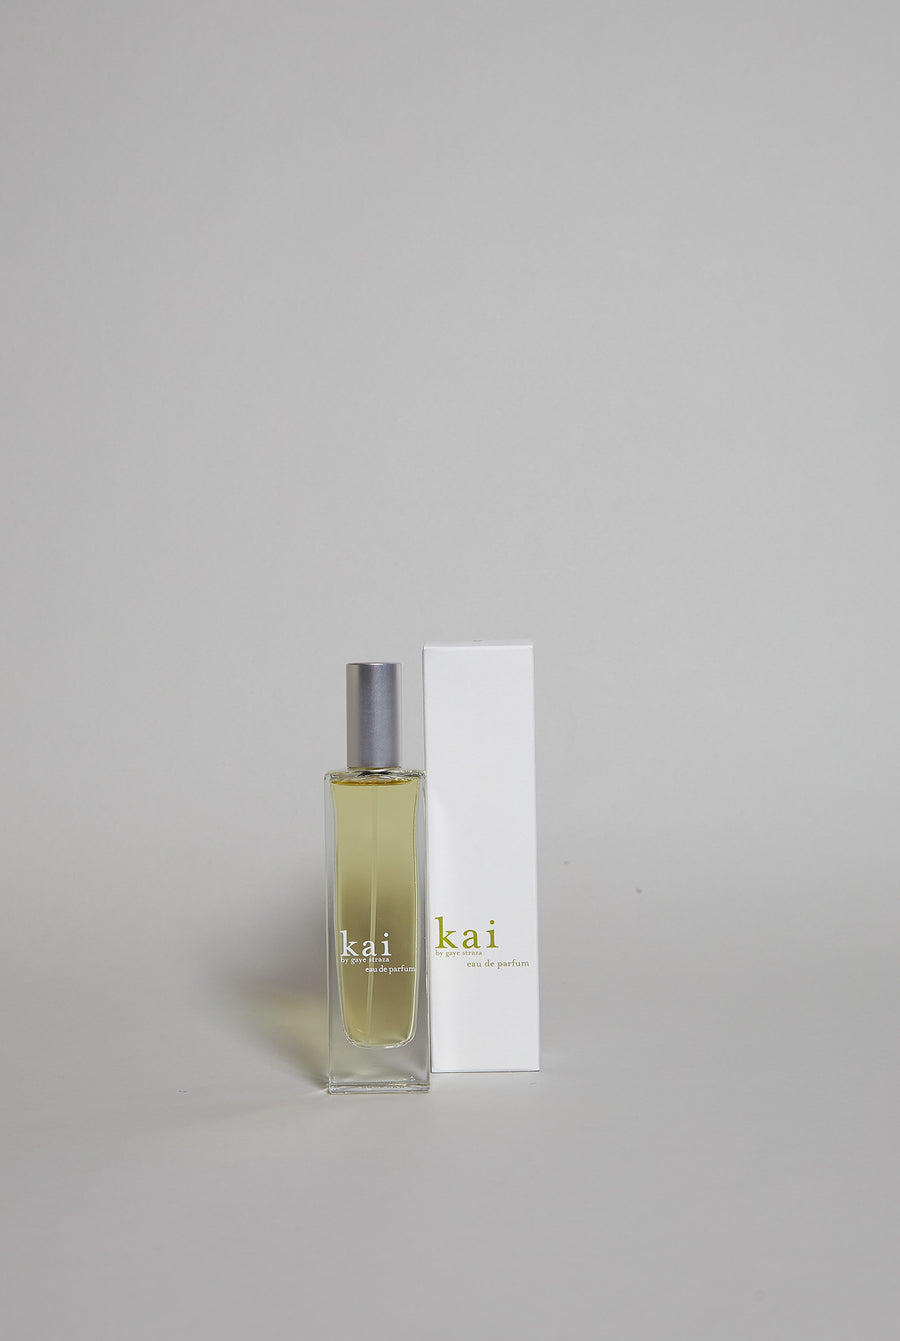 kai eau de parfum 1.7 oz. spray bottle